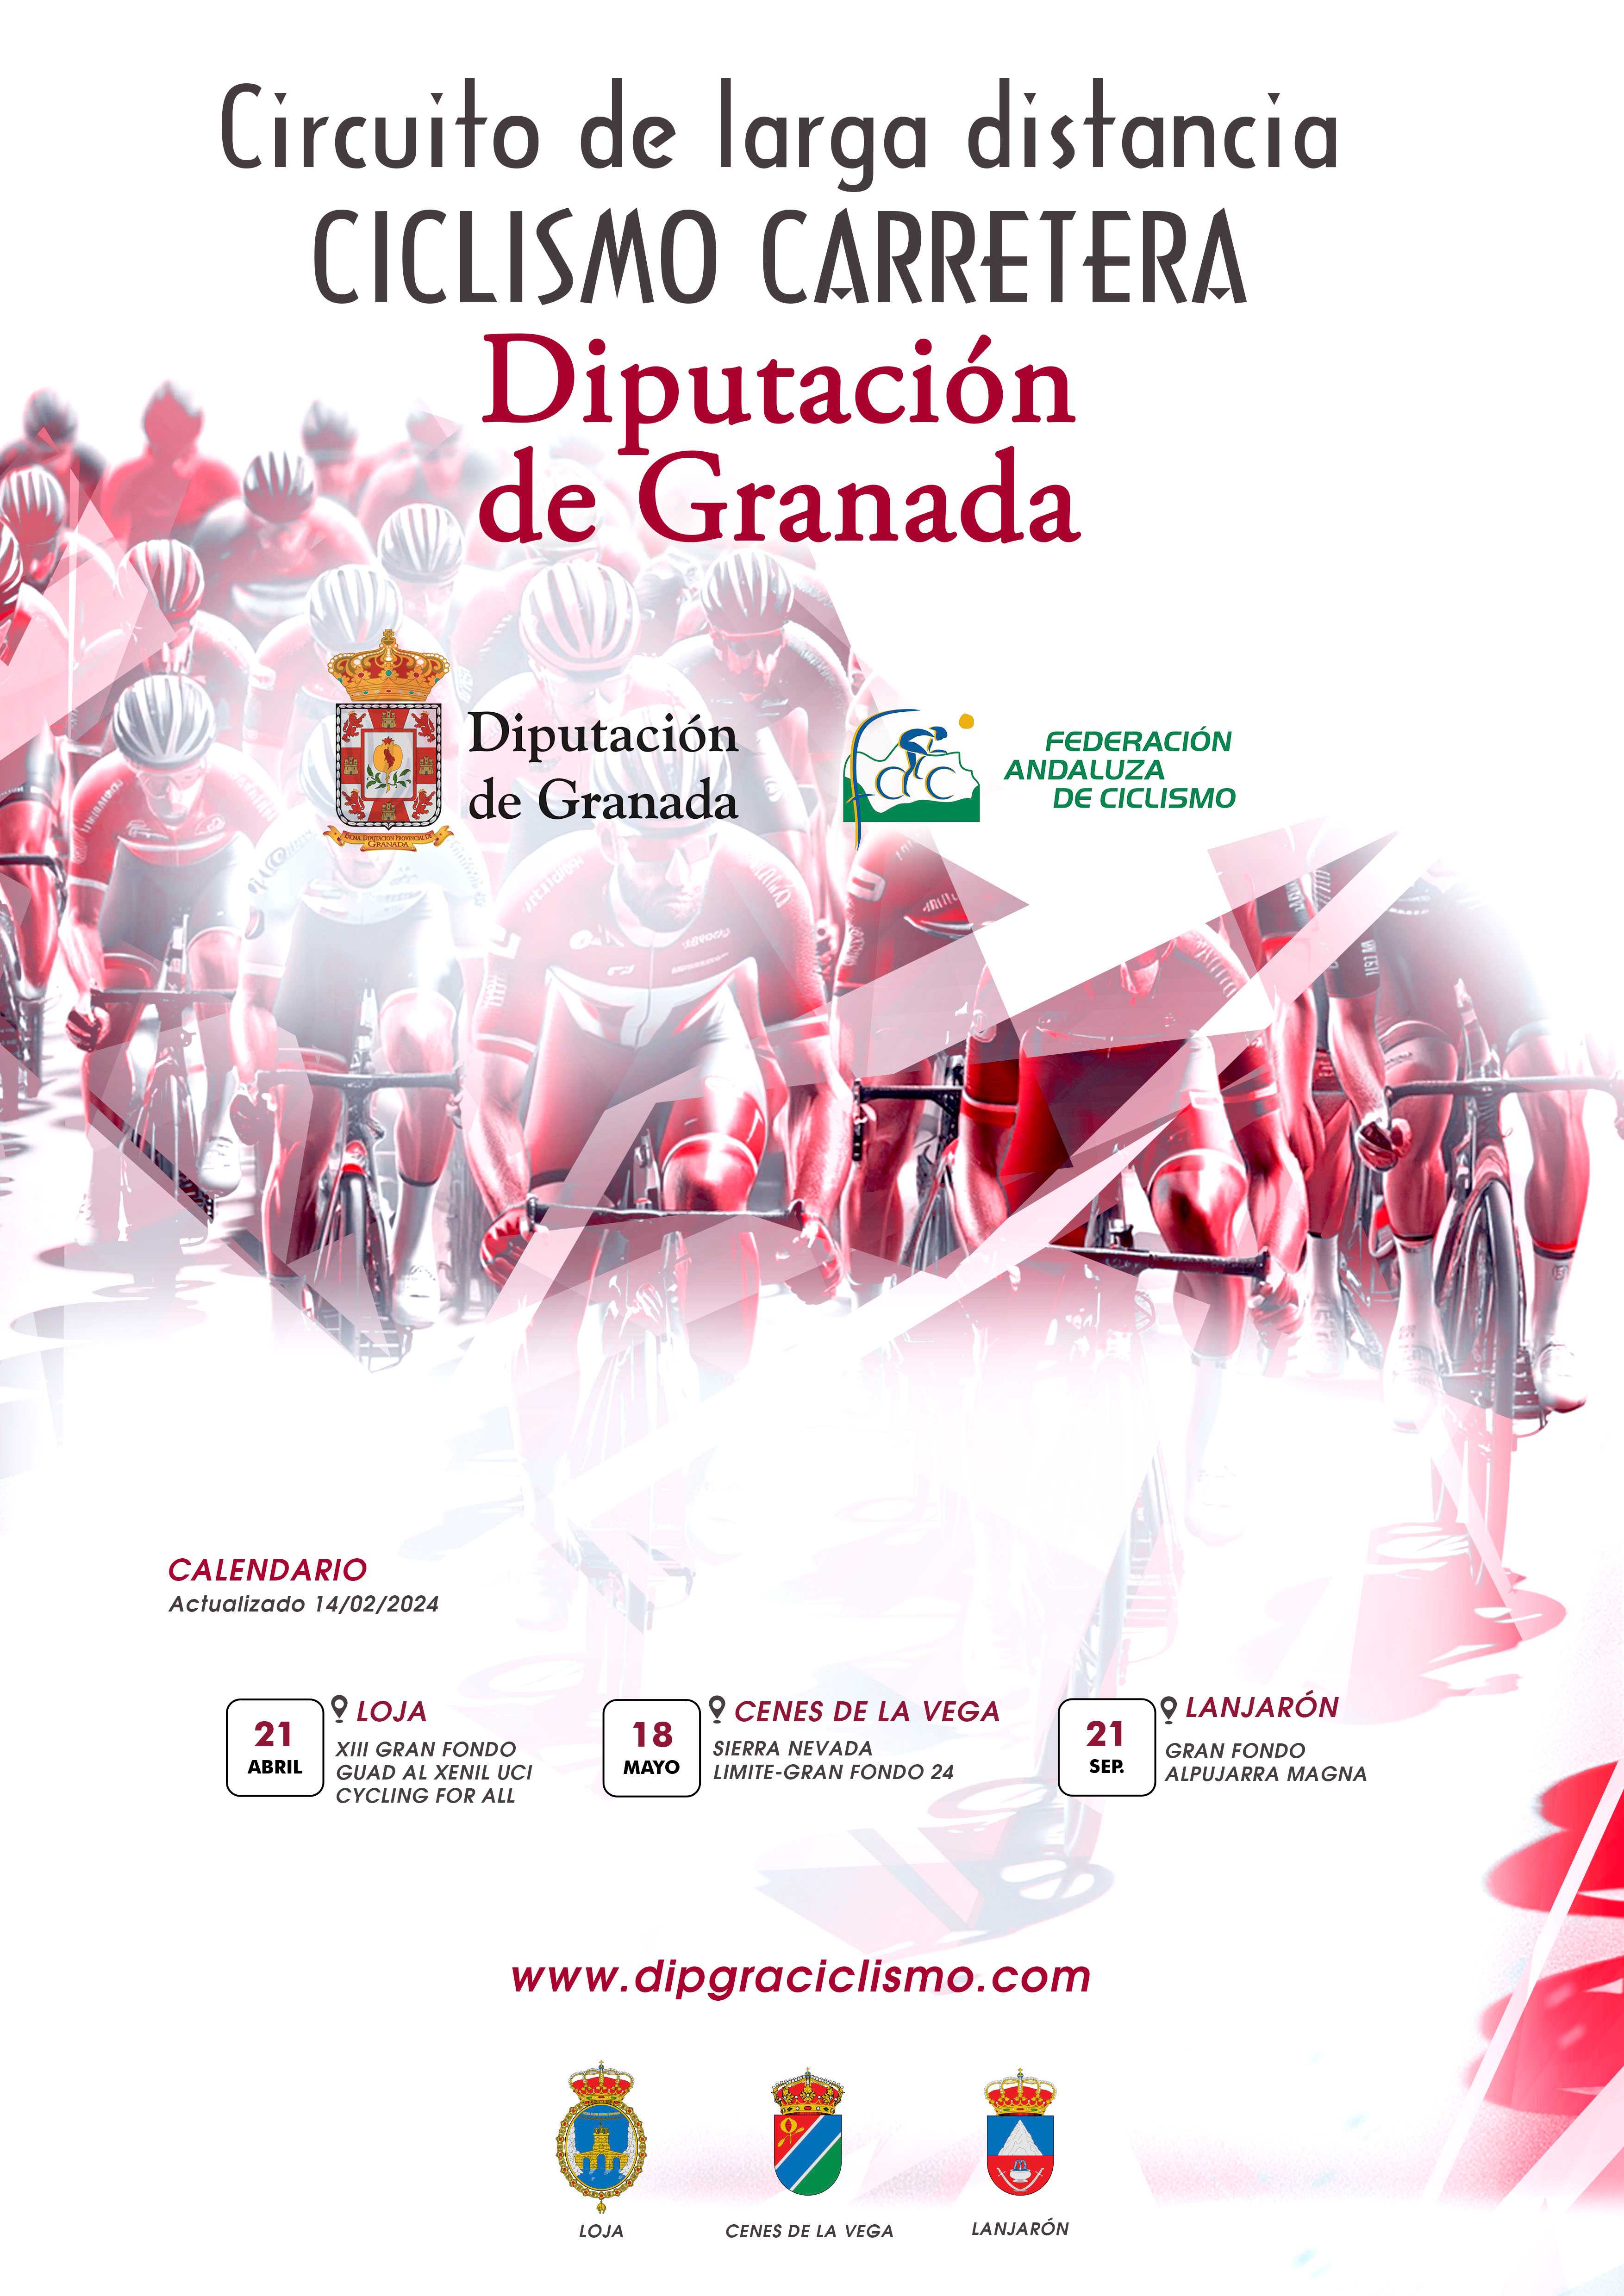 Cenes de la Vega recibirá al Circuito de Larga Distancia Diputación de Granada